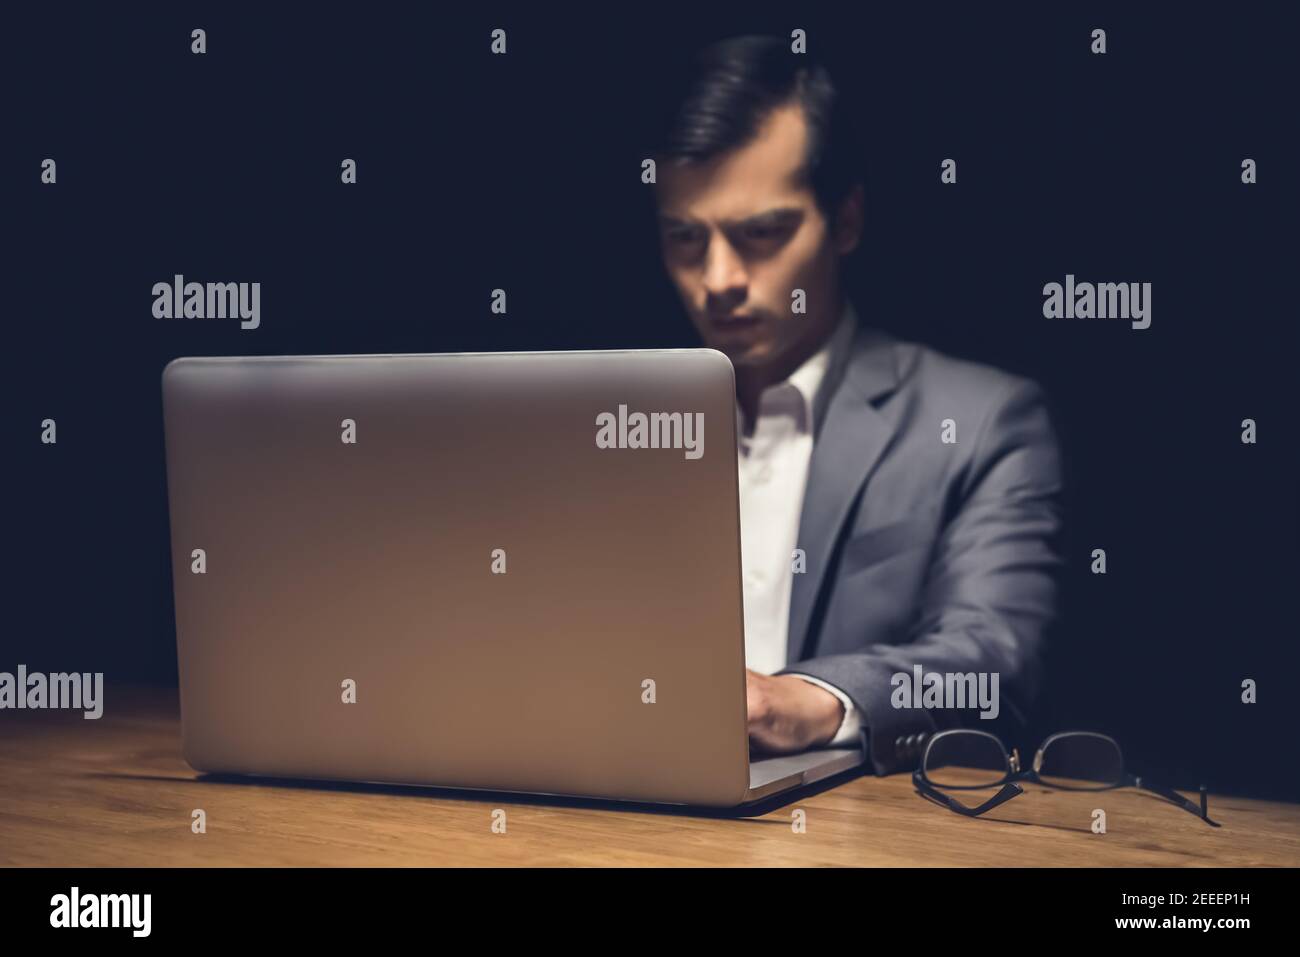 Geschäftsmann mit Laptop-Computer arbeiten spät in der Nacht im Dunkeln Raum - Workaholic und Hacker-Konzept Stockfoto